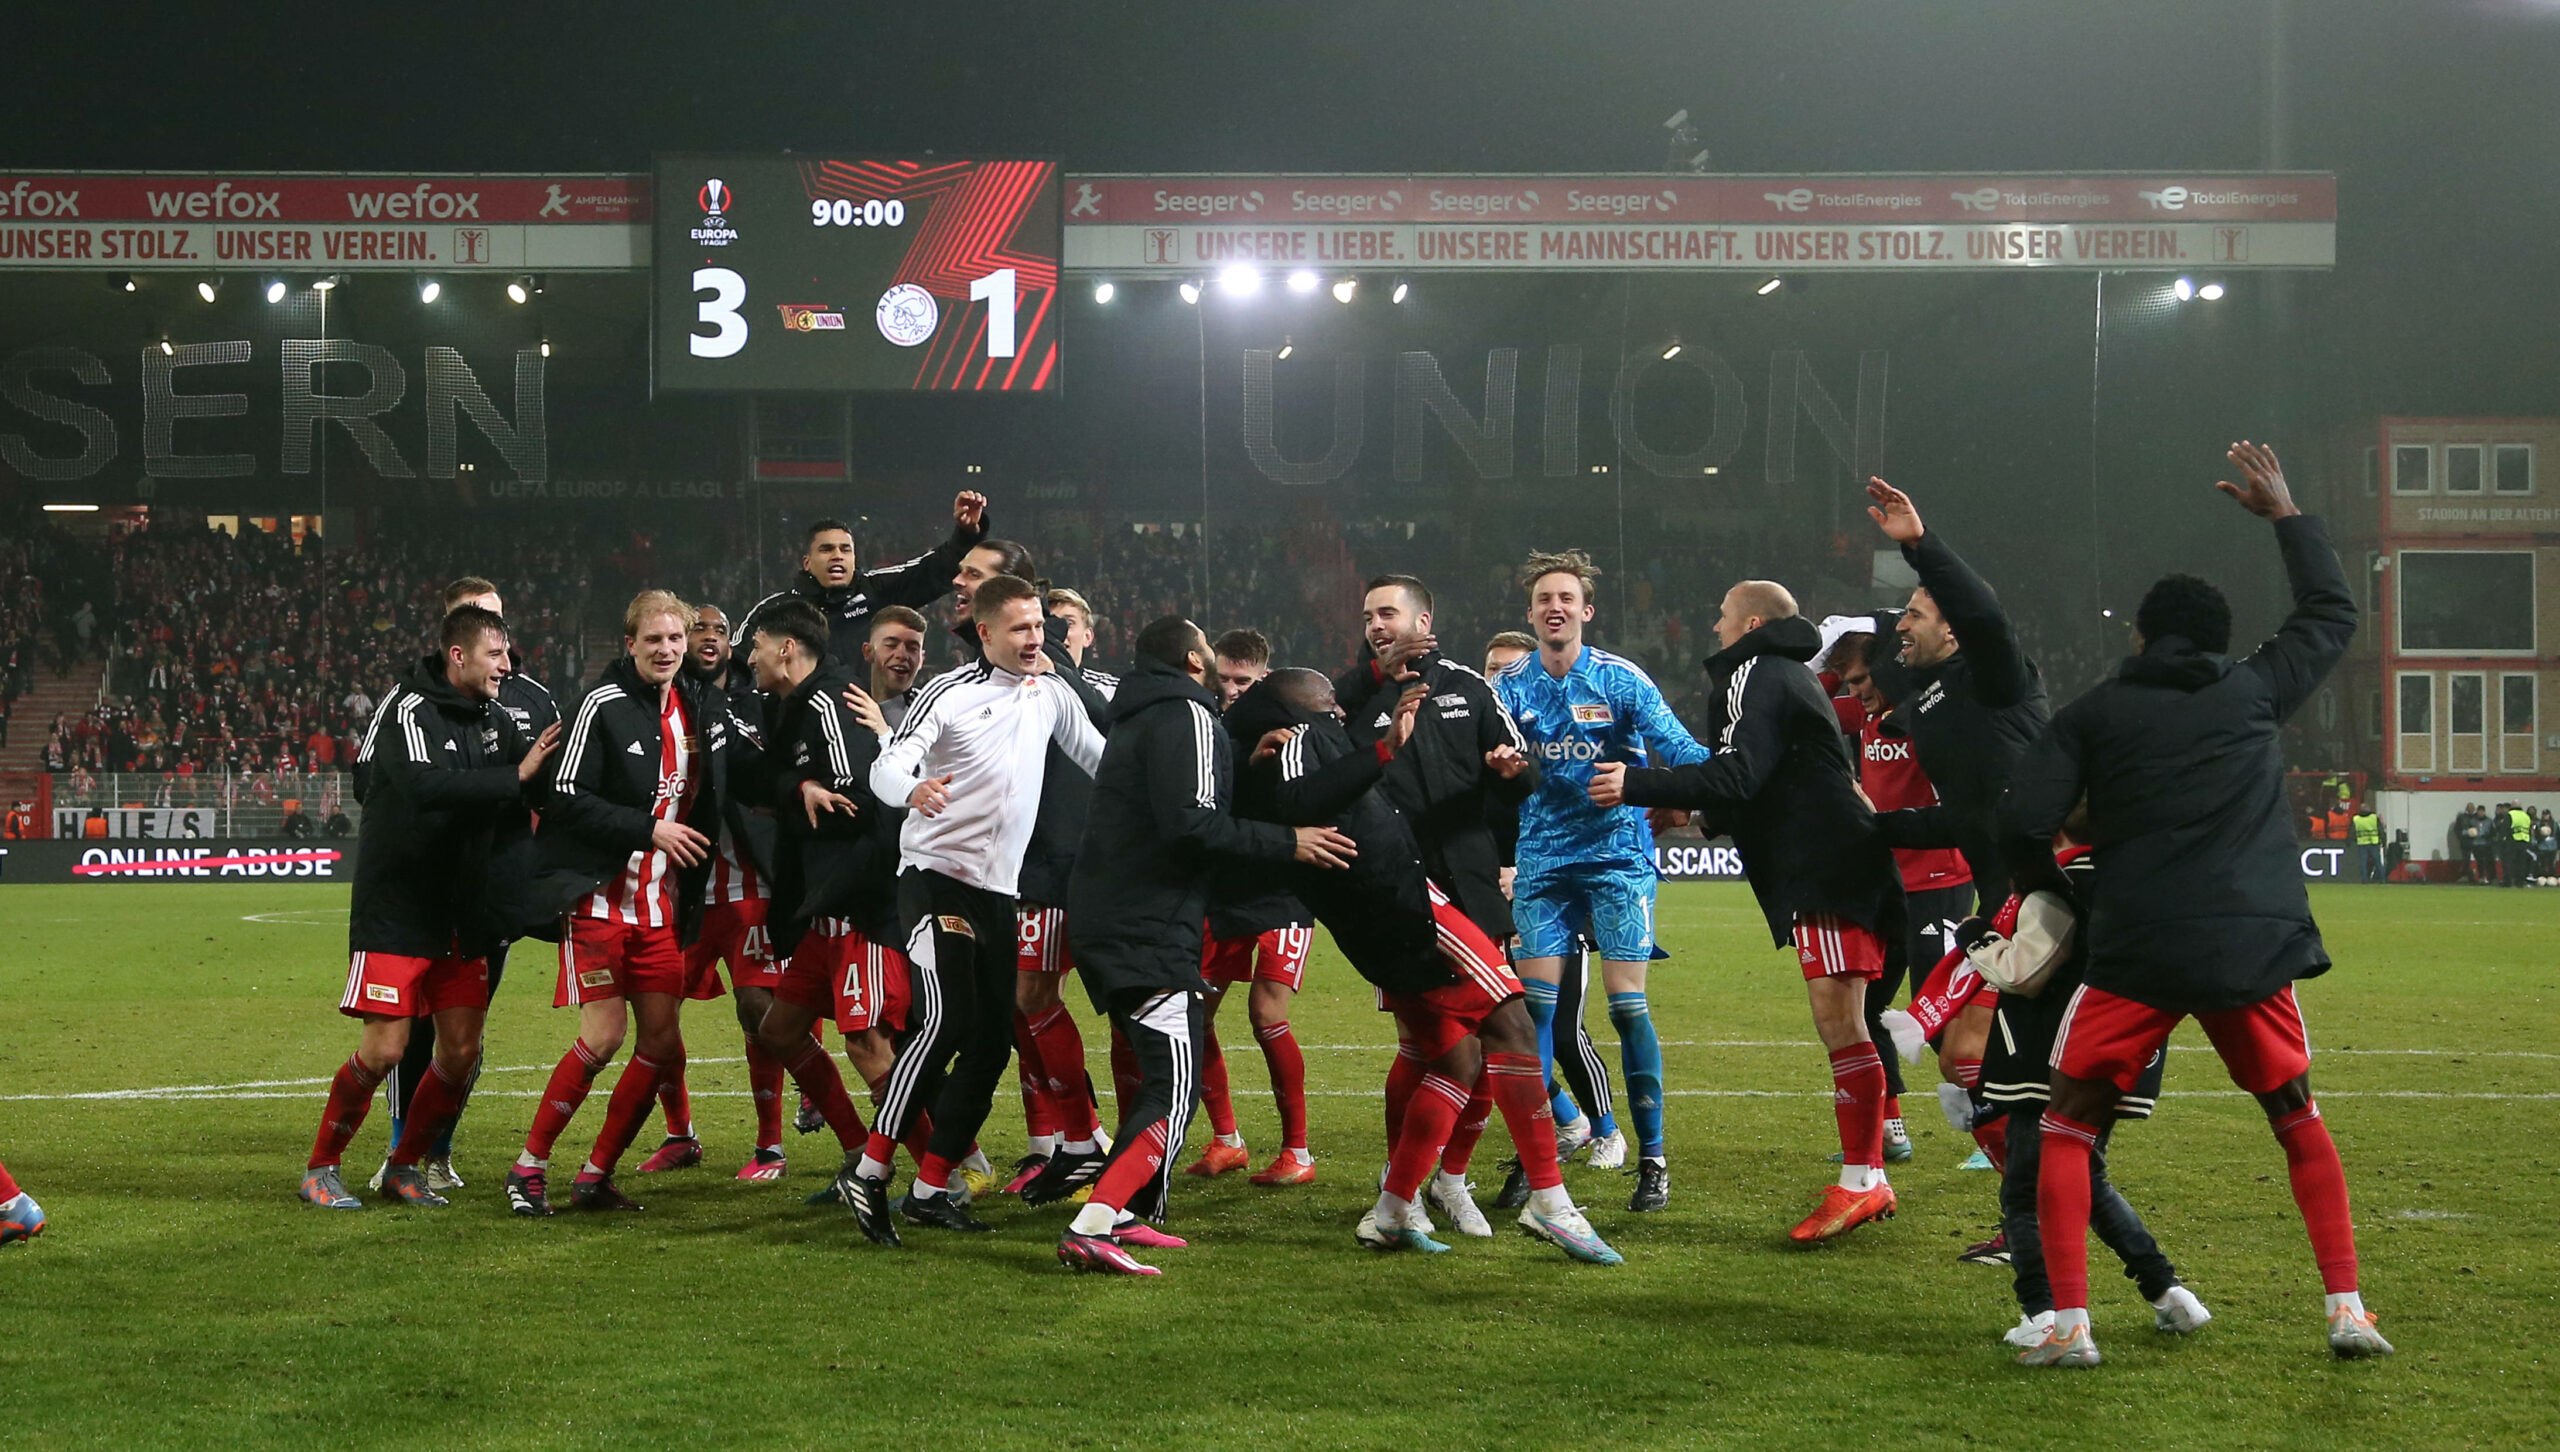 Die Spieler von Union Berlin feiern nach ihrem Sieg über Ajax Amsterdam.